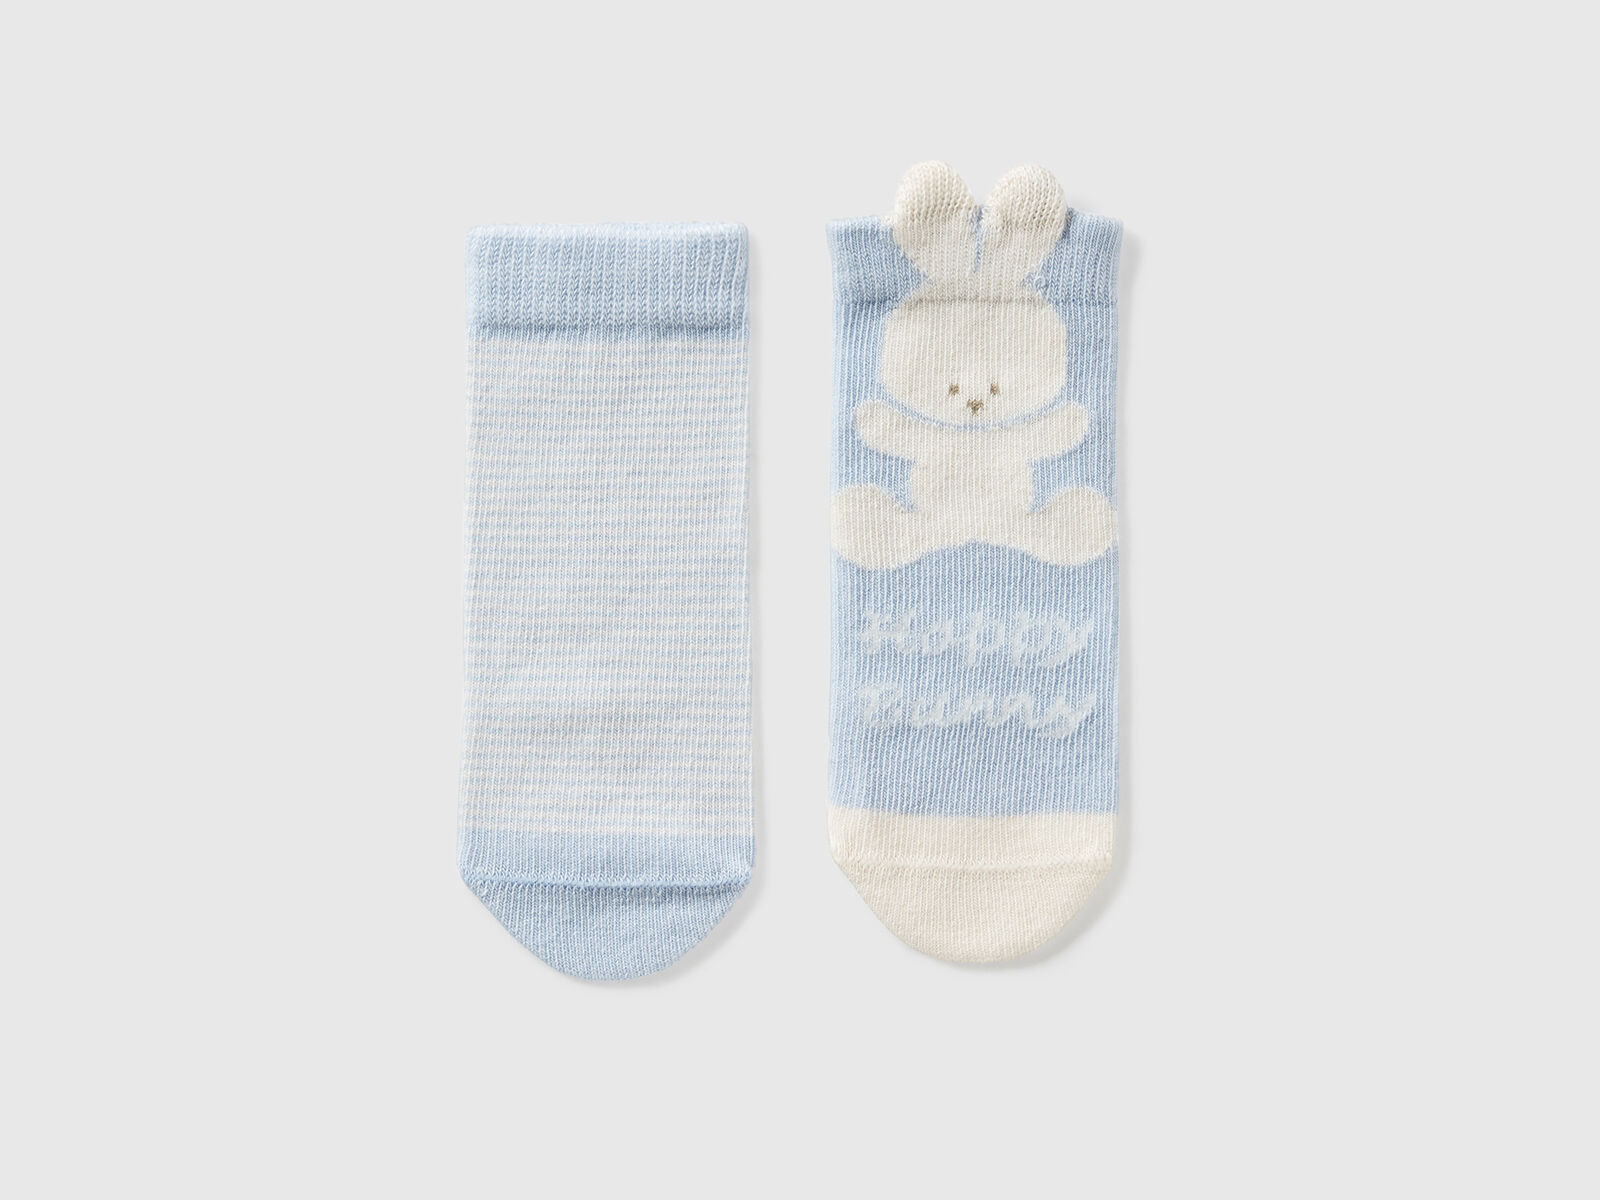 Set 3 pares de calcetines de algodón bebé tonos rosa 0 a 6 meses